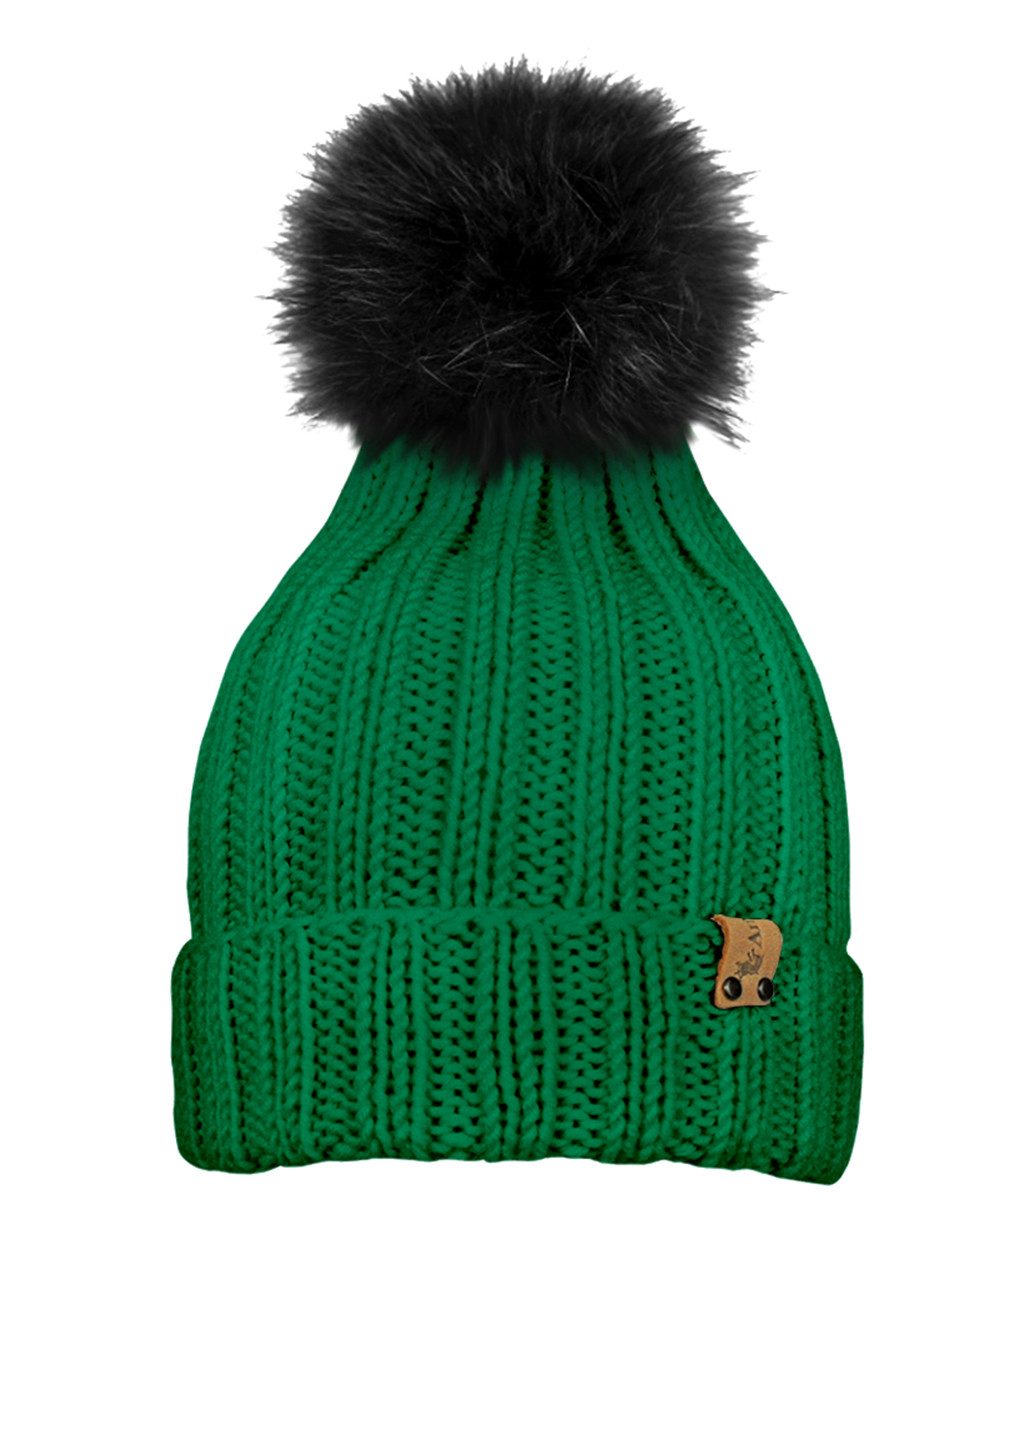 Зелений зимній комплект (шапка, шарф-снуд) Anmerino